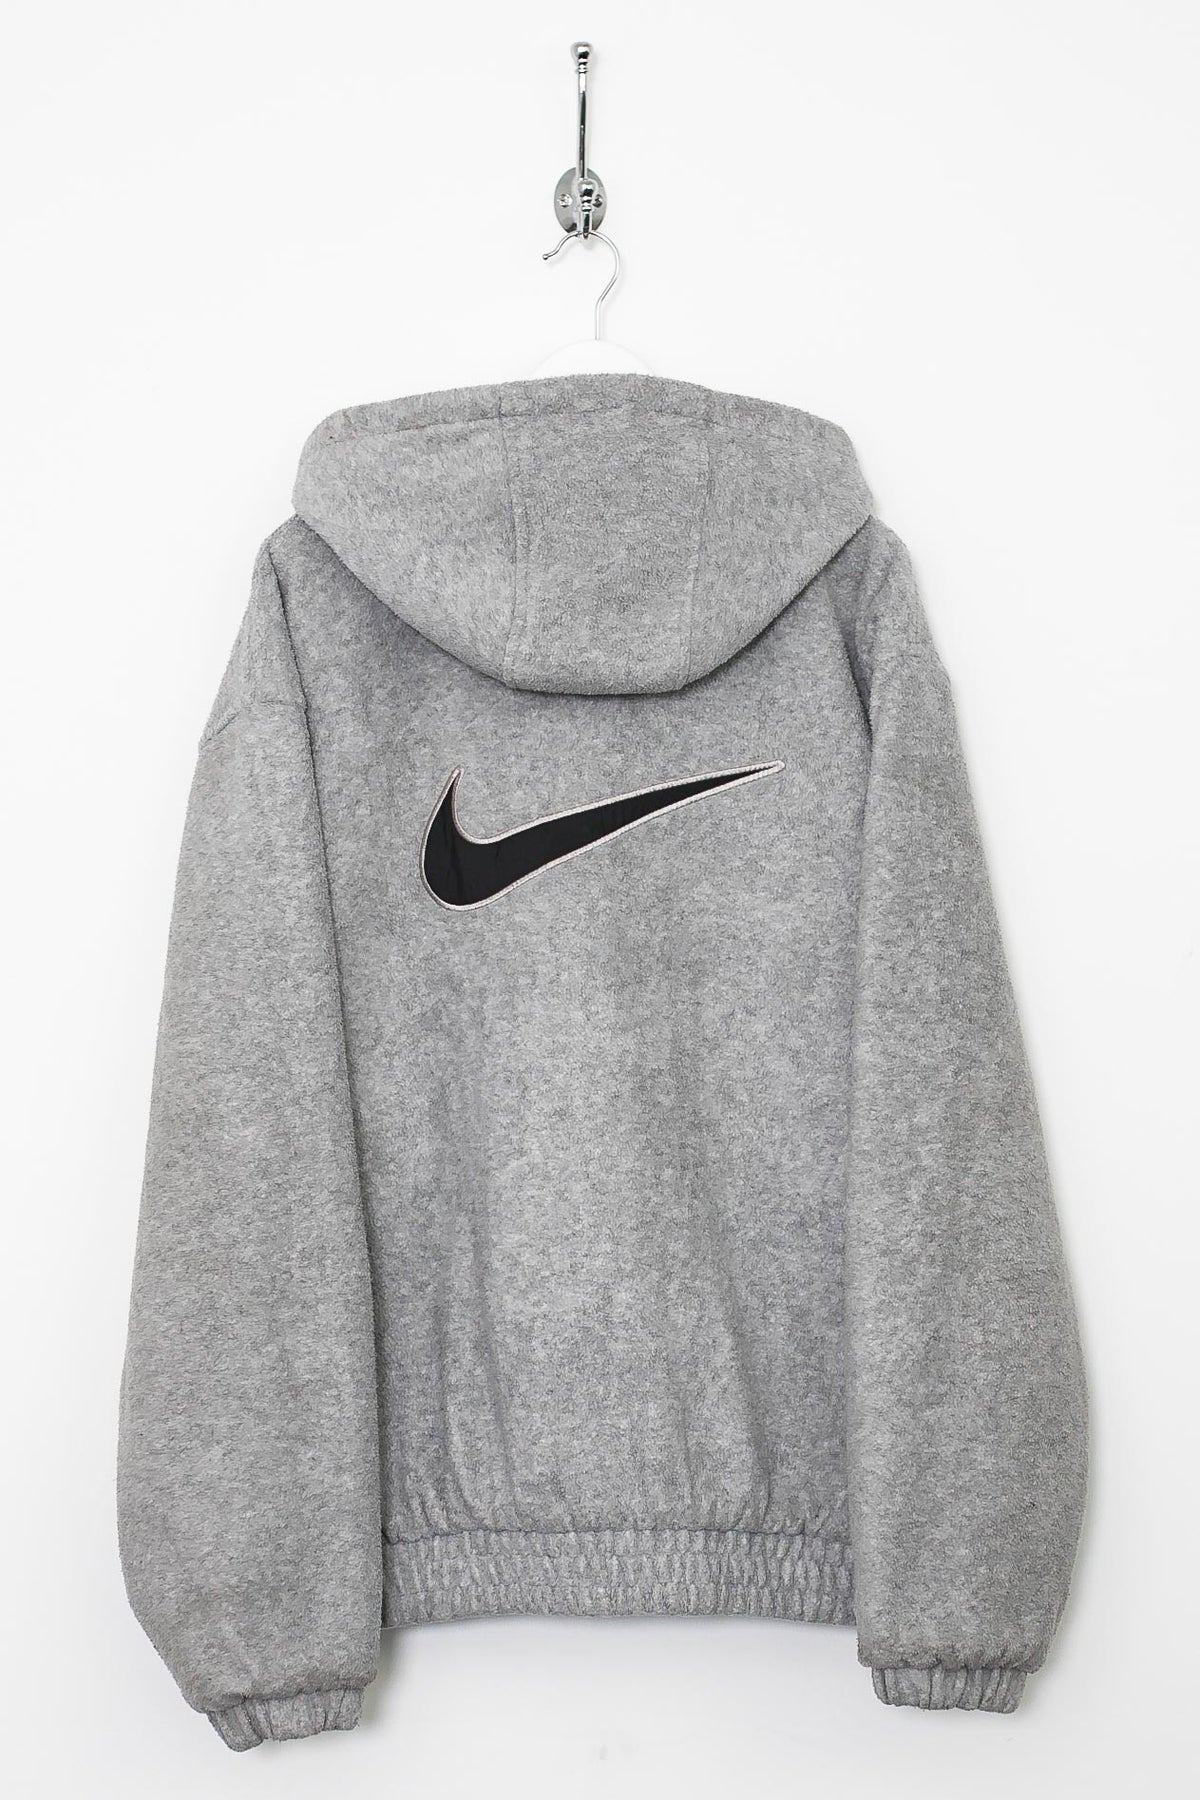 00s Nike Fleece Varsity Jacket (XL)